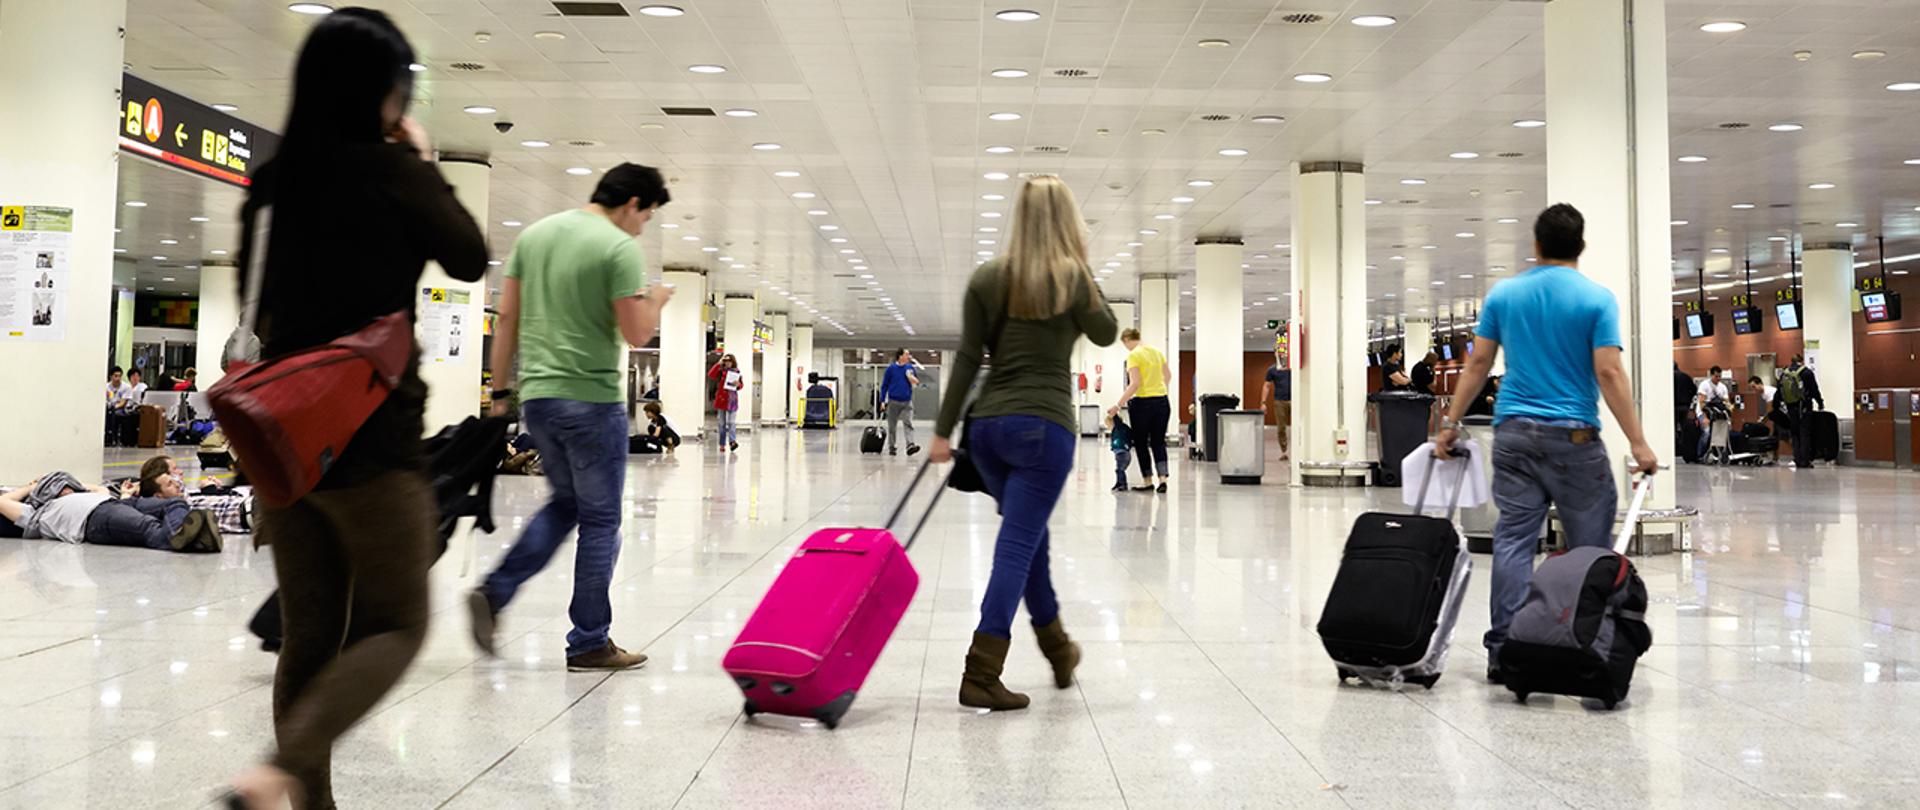 Ludzie z walizkami idą przez halę na lotnisku.